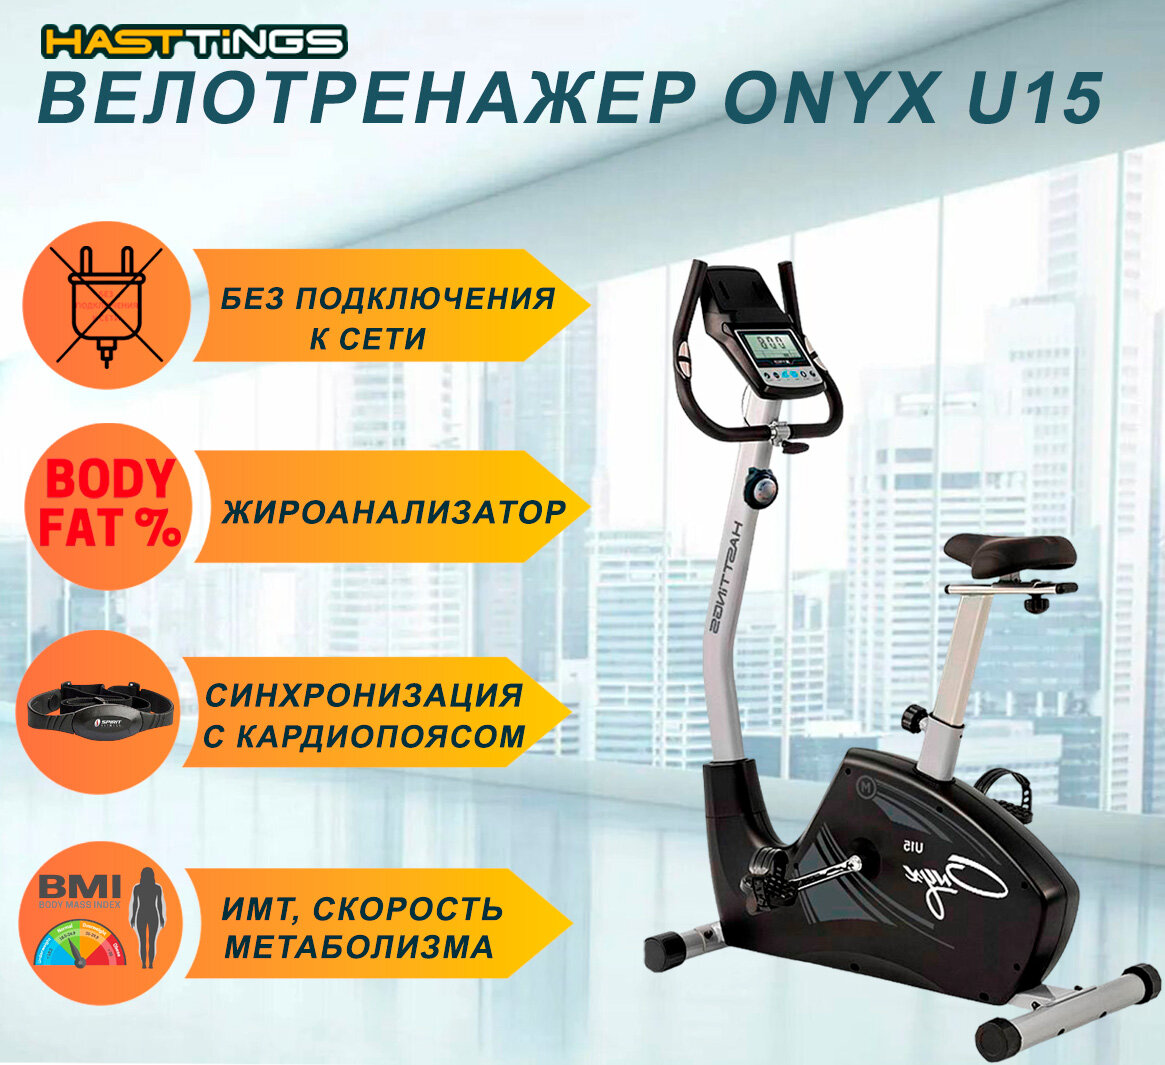 Велотренажер Hasttings U15 ONYX - до 130 кг/без подключения к сети/жироанализатор/8 уровней сопротивления/до 500 ккал за 1 ч